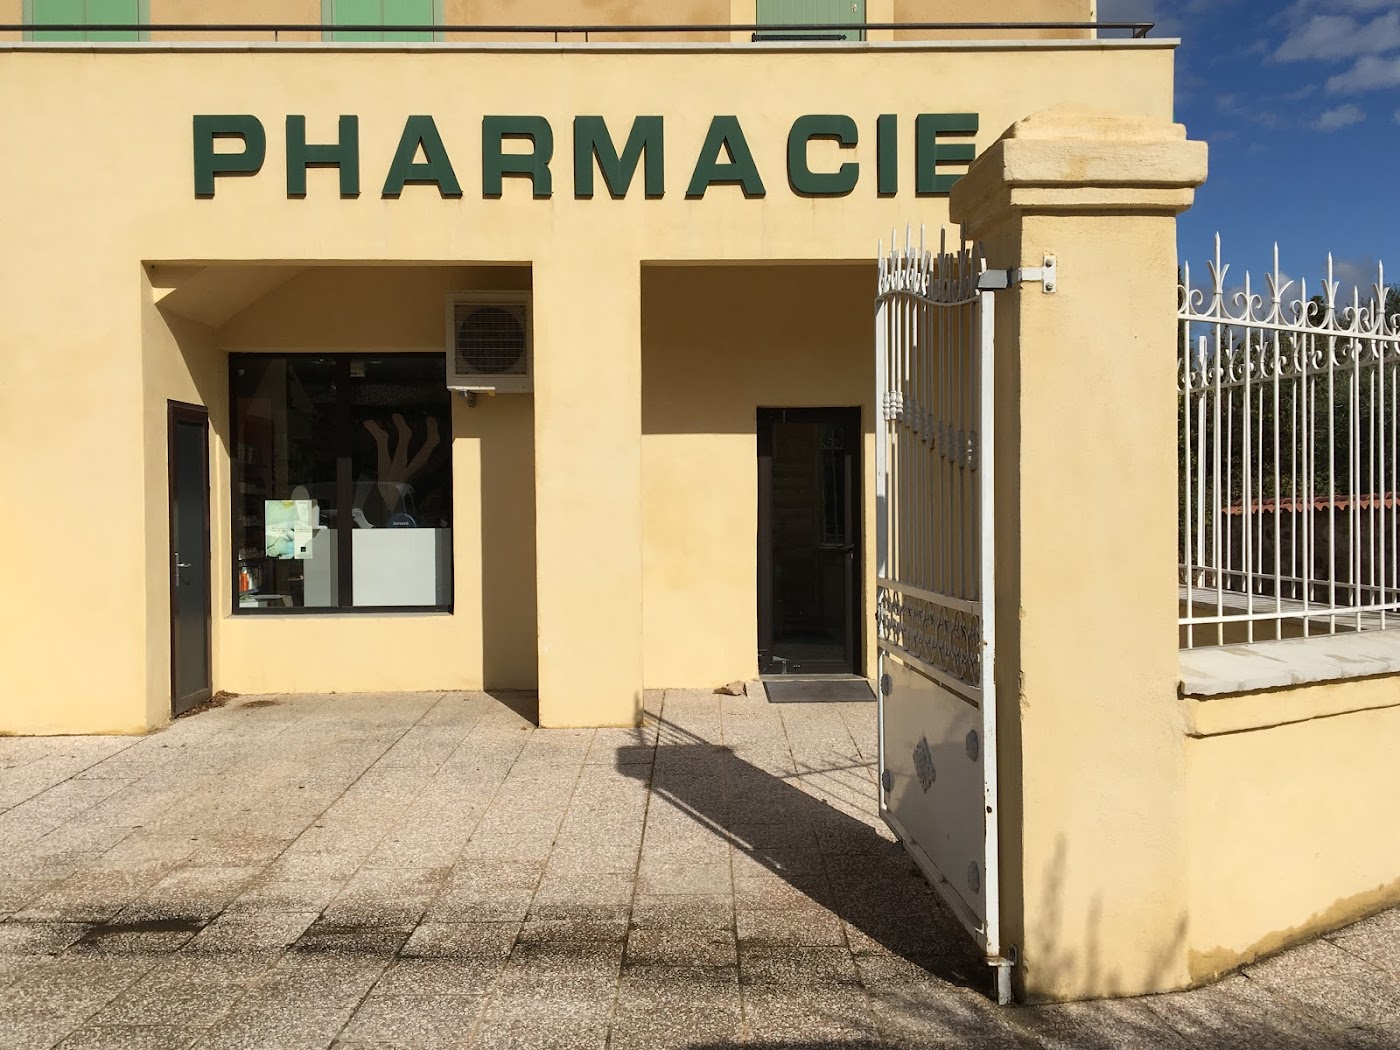 Pharmacie Saint Victor